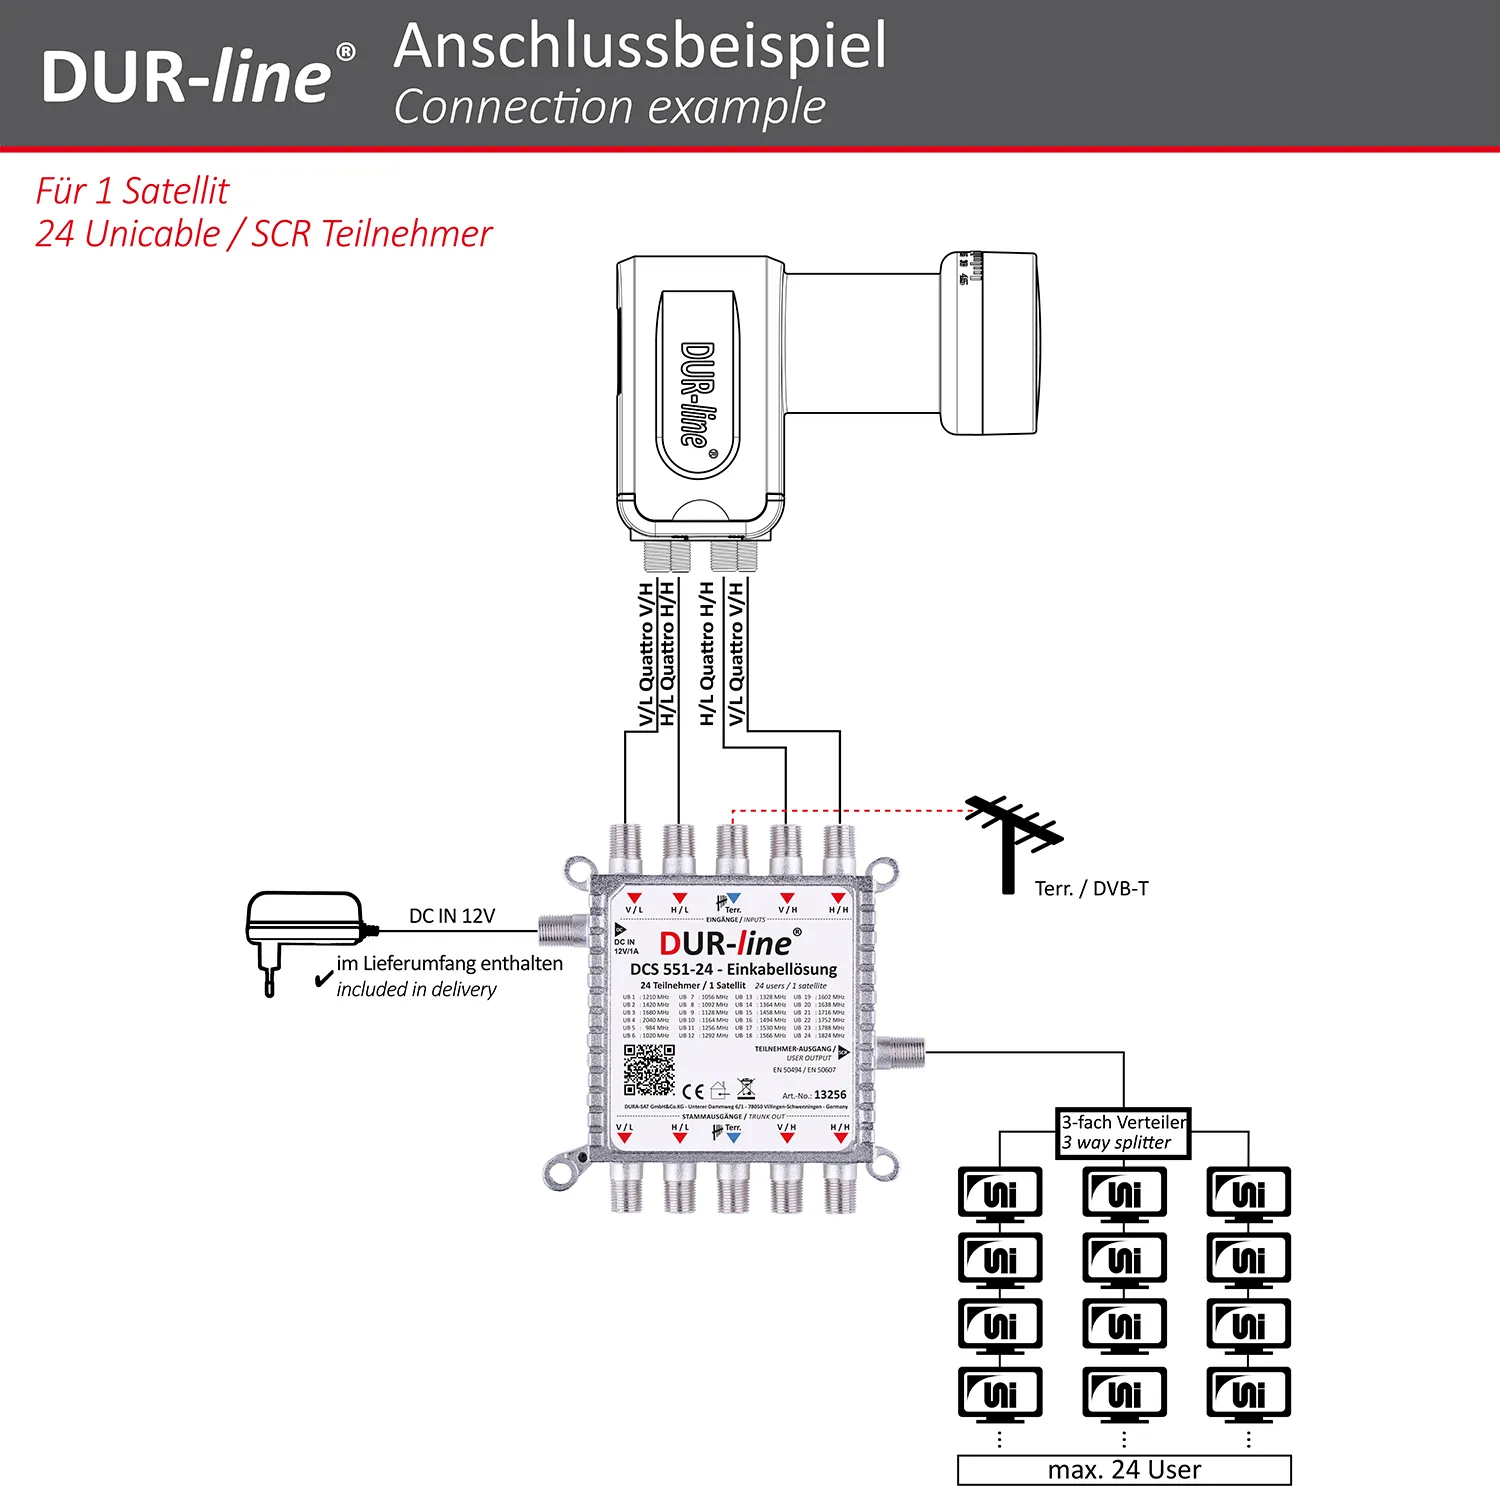 DUR-line DCS 551-24 - Einkabellösung